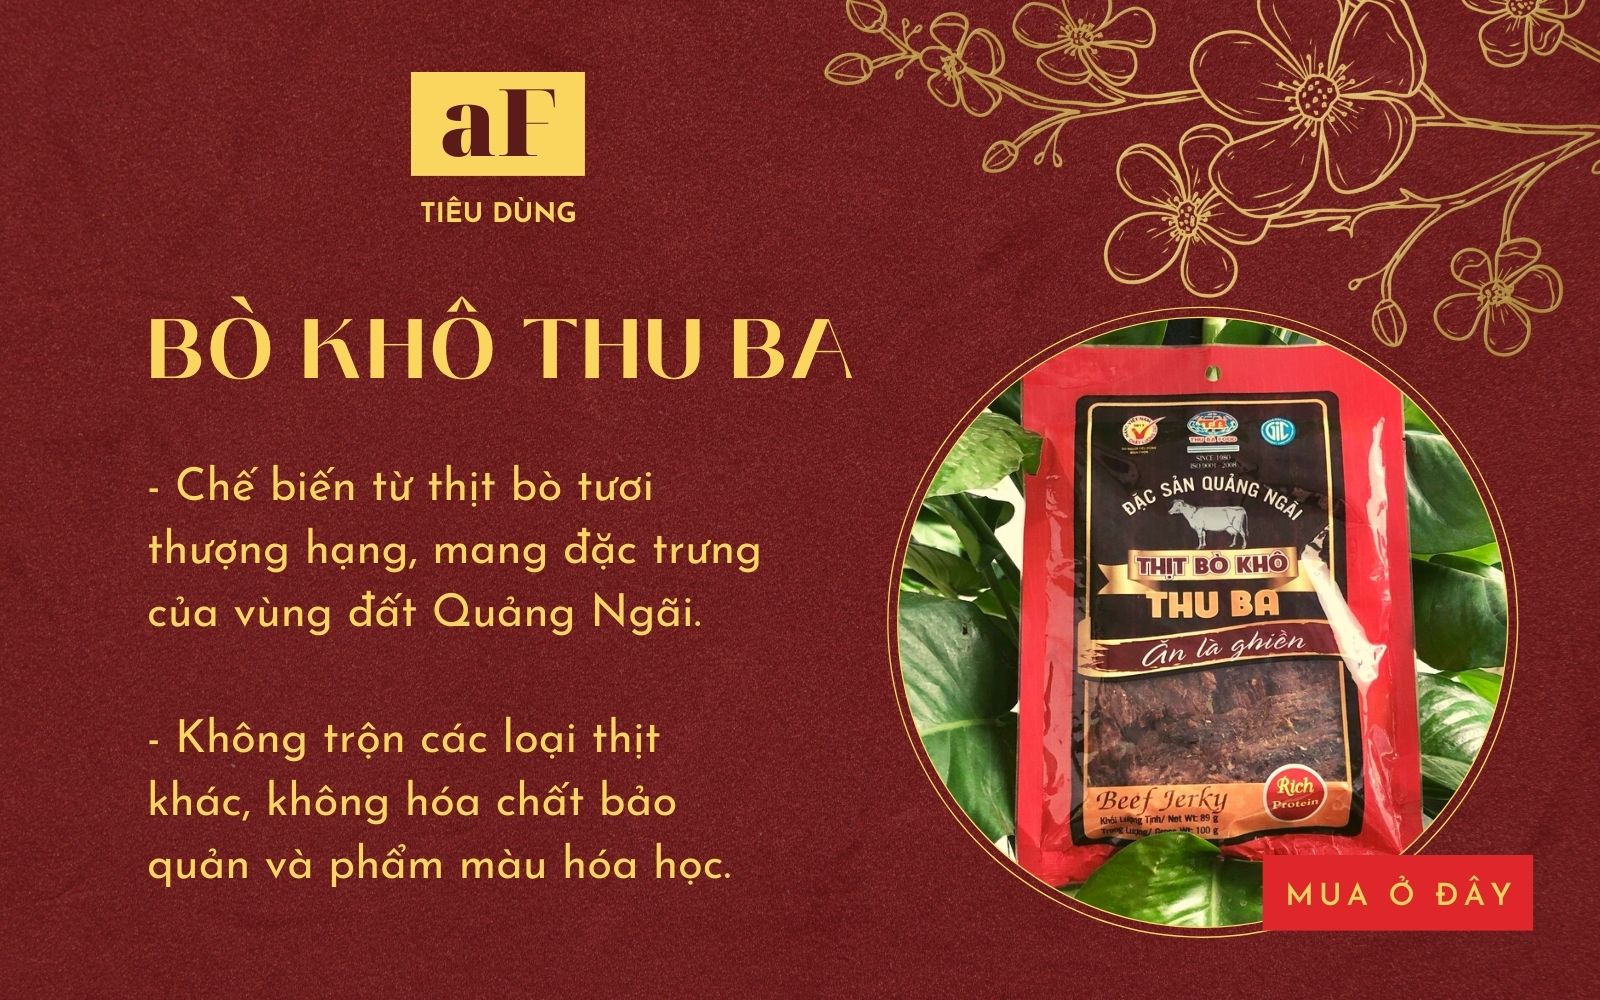 7 địa chỉ mua thịt bò khô ngon tại Hà Nội và Sài Gòn mua đãi khách Tết ai cũng tấm tắc khen - Ảnh 7.